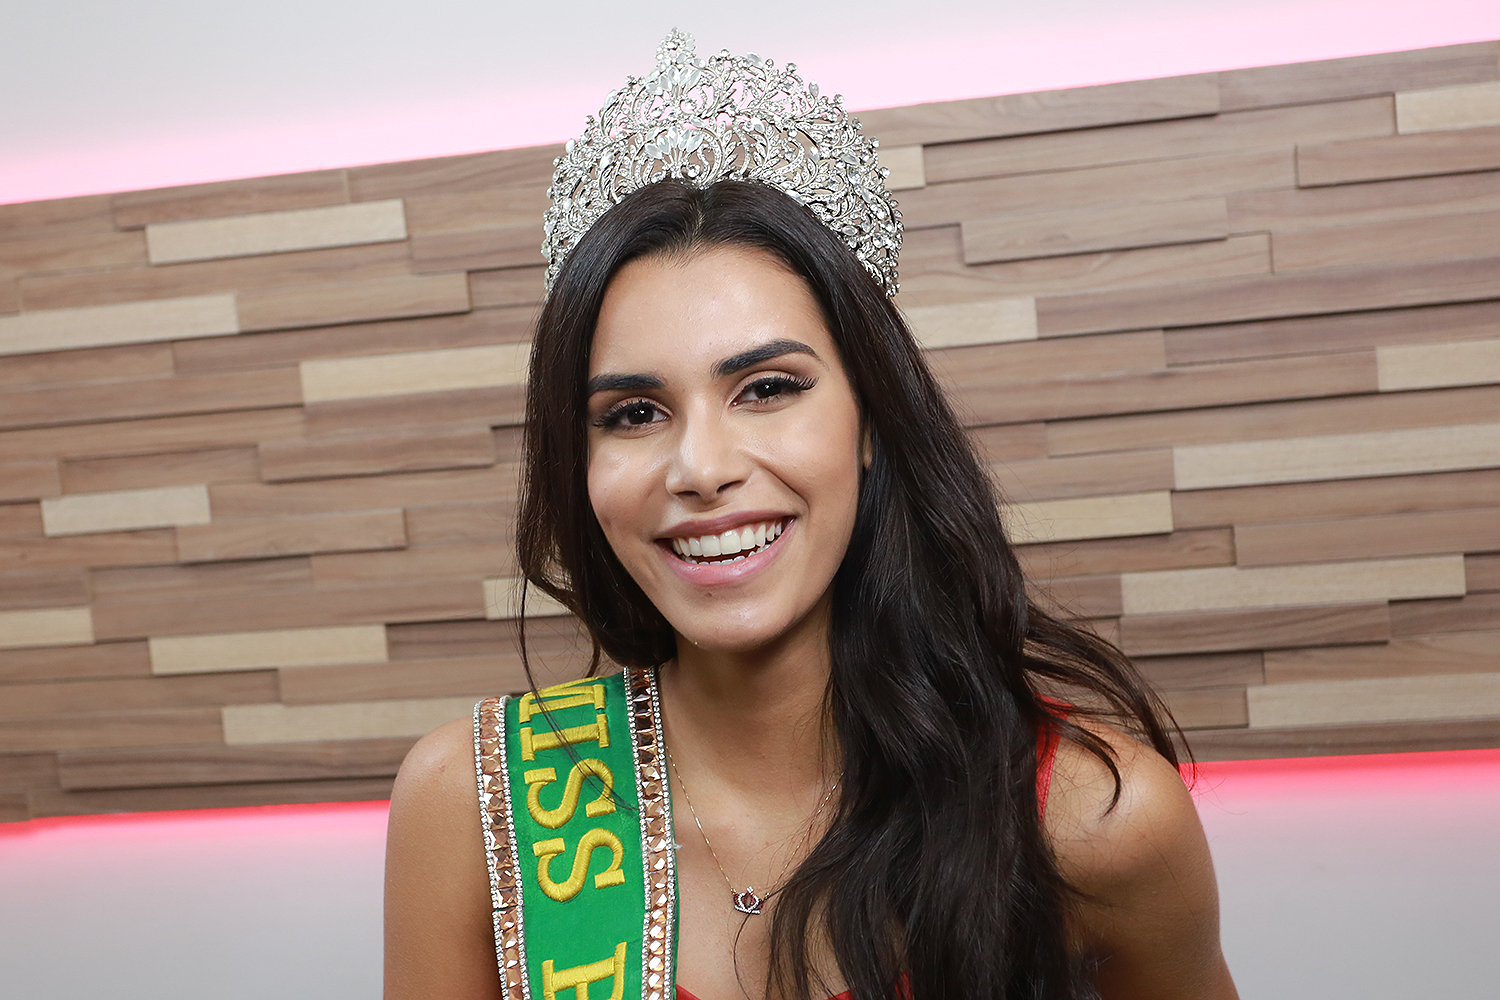 Miss Piauí, Naiely Lima